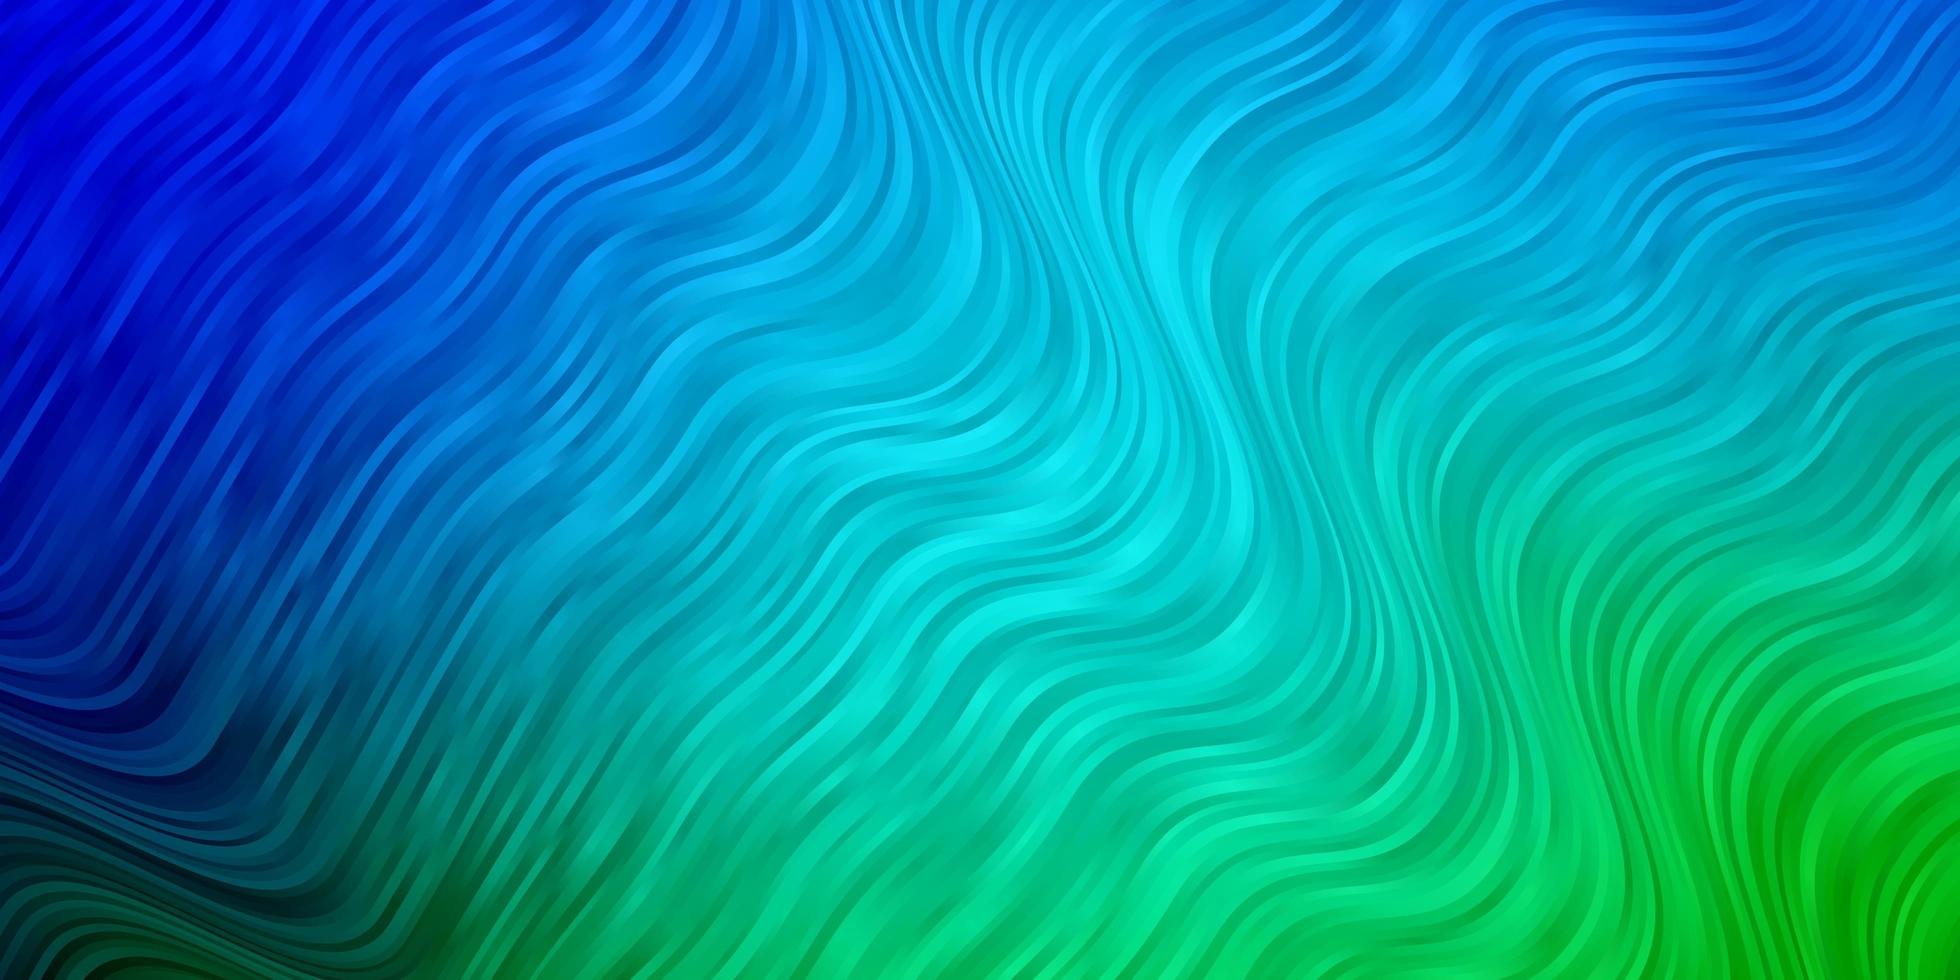 sfondo vettoriale azzurro, verde con curve.